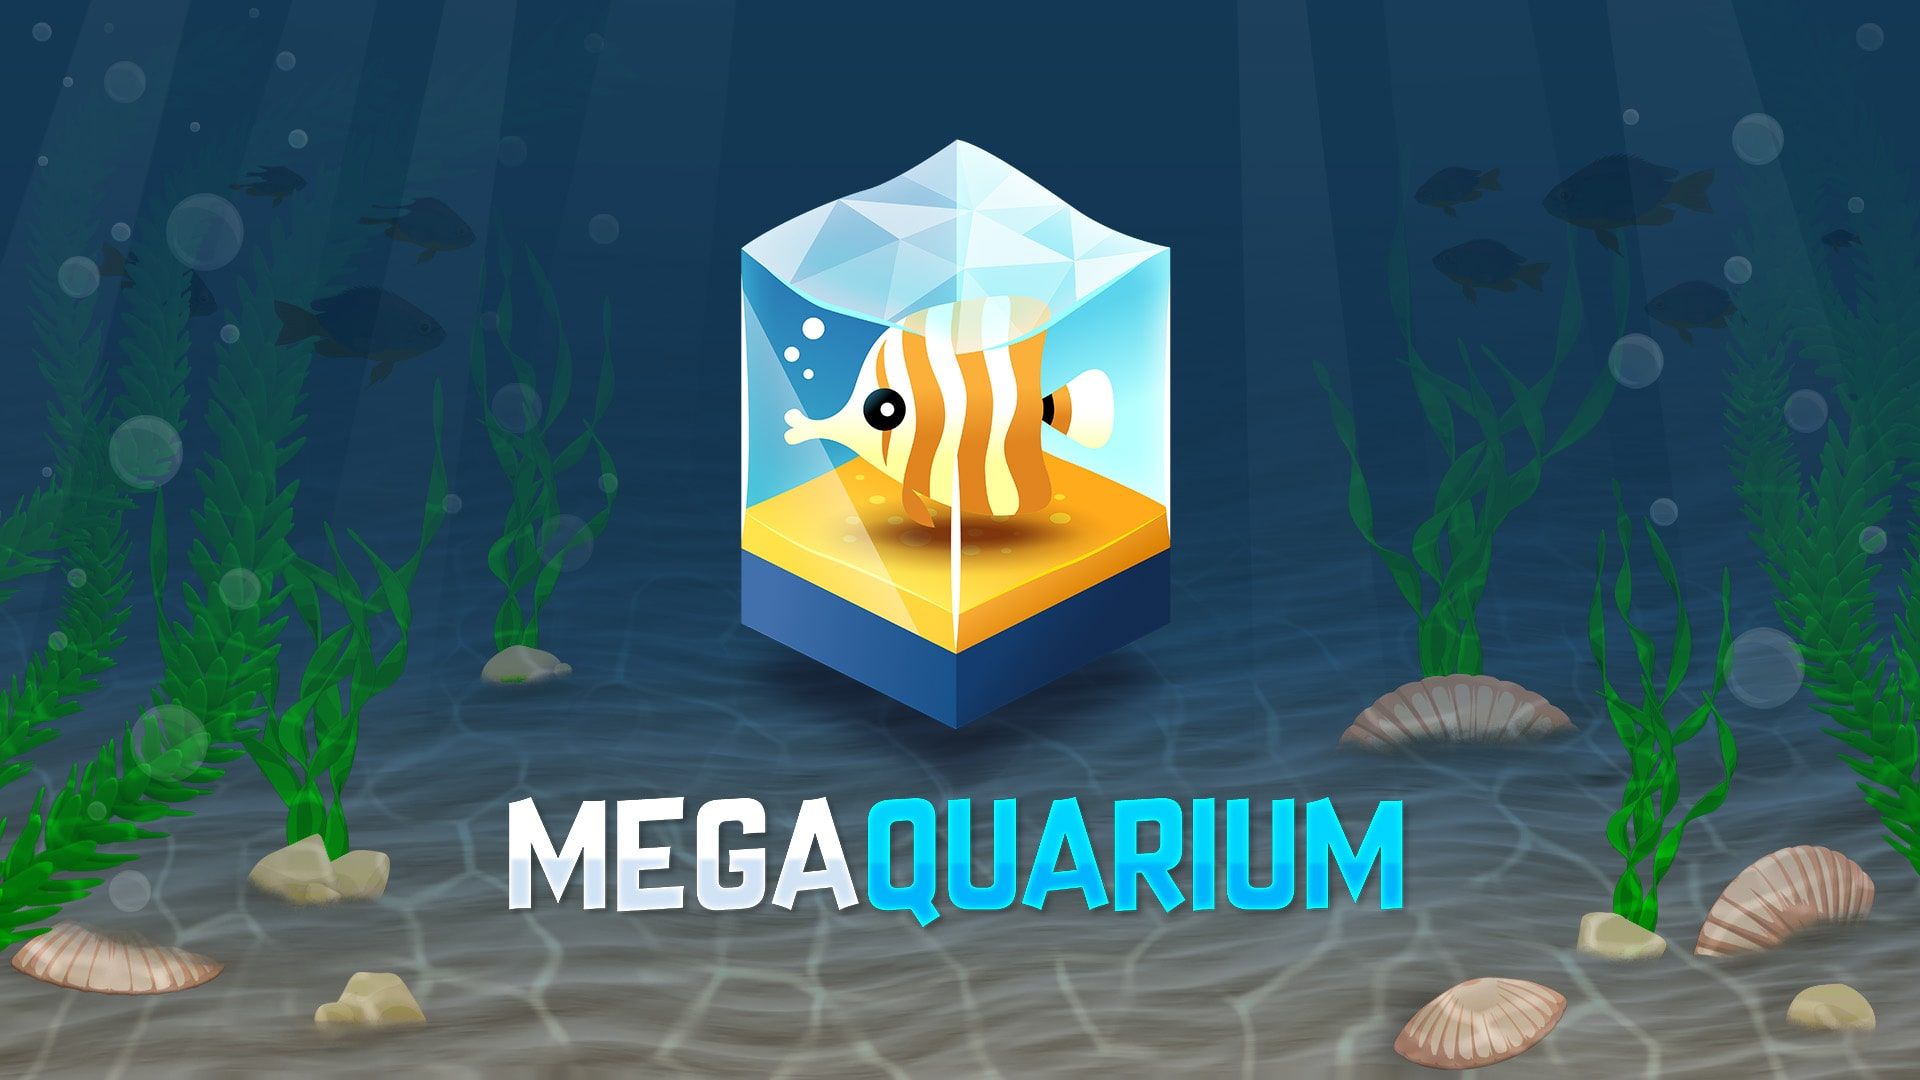 Megaquarium cover image